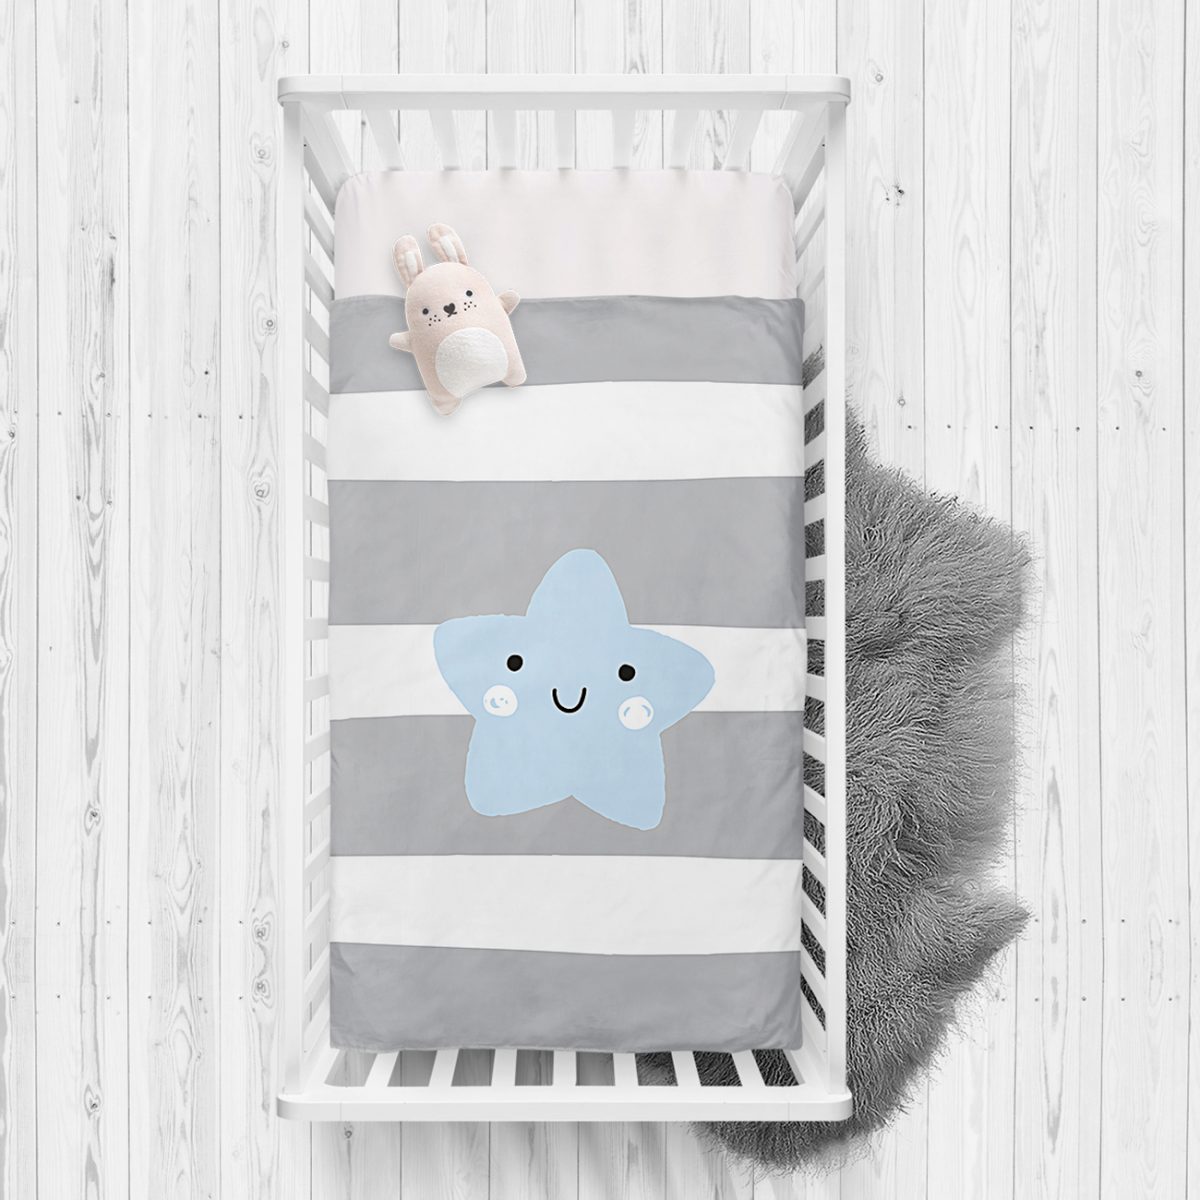 Gri Çizgiler Üzerine Mavi Yıldız Tasarımlı Bebek Odası Yatak Örtüsü Realhomes